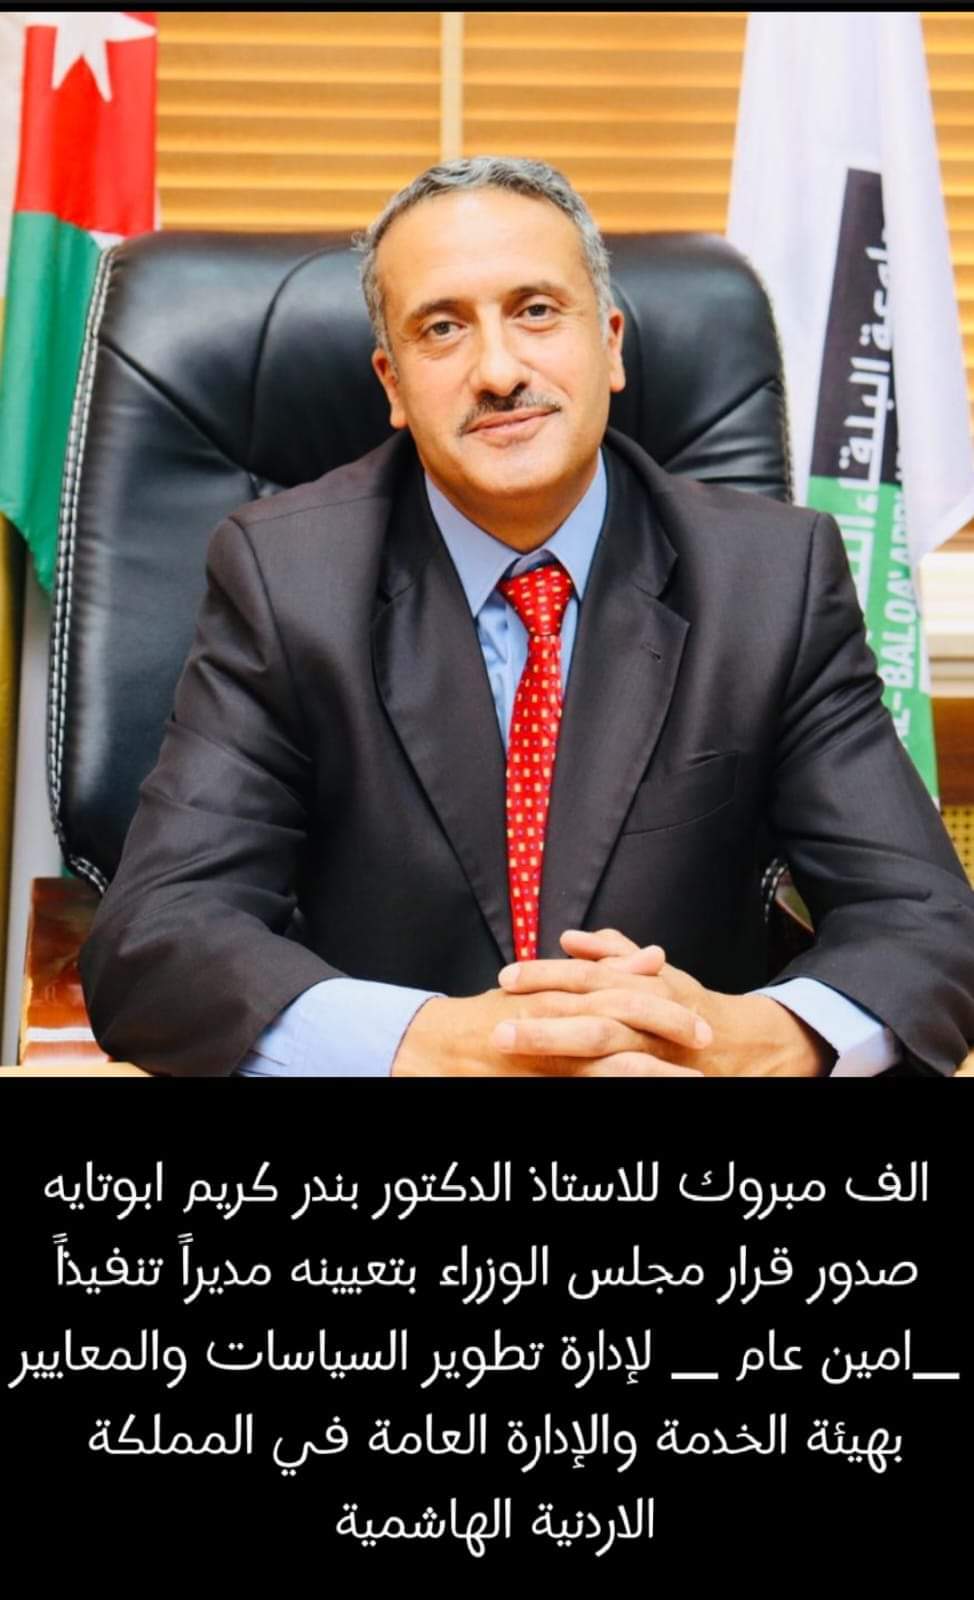 الدكتور بندر كريم أبو تايه مديراً تنفيذيَّاً لإدارة تطوير السِّياسات والمعايير